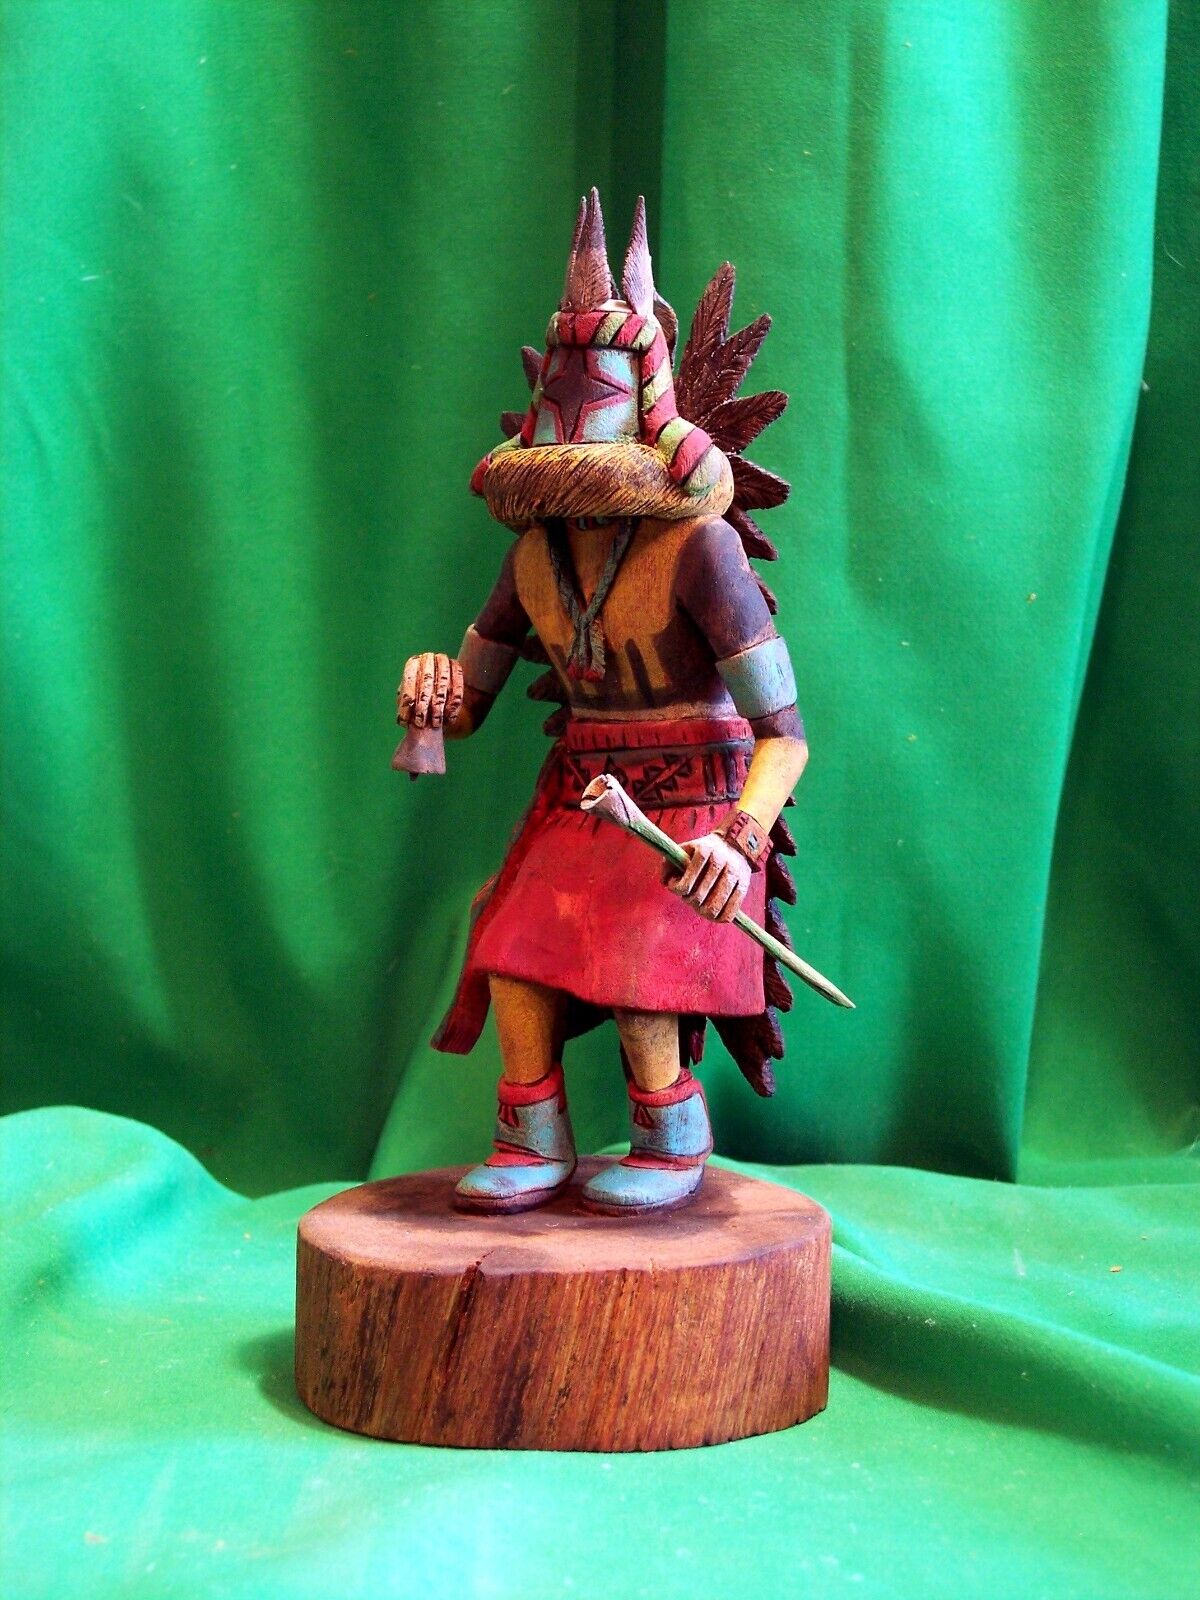 Hopi Kachina Doll - The Chasing Star Kachina by Elgean Joshevama - Superb